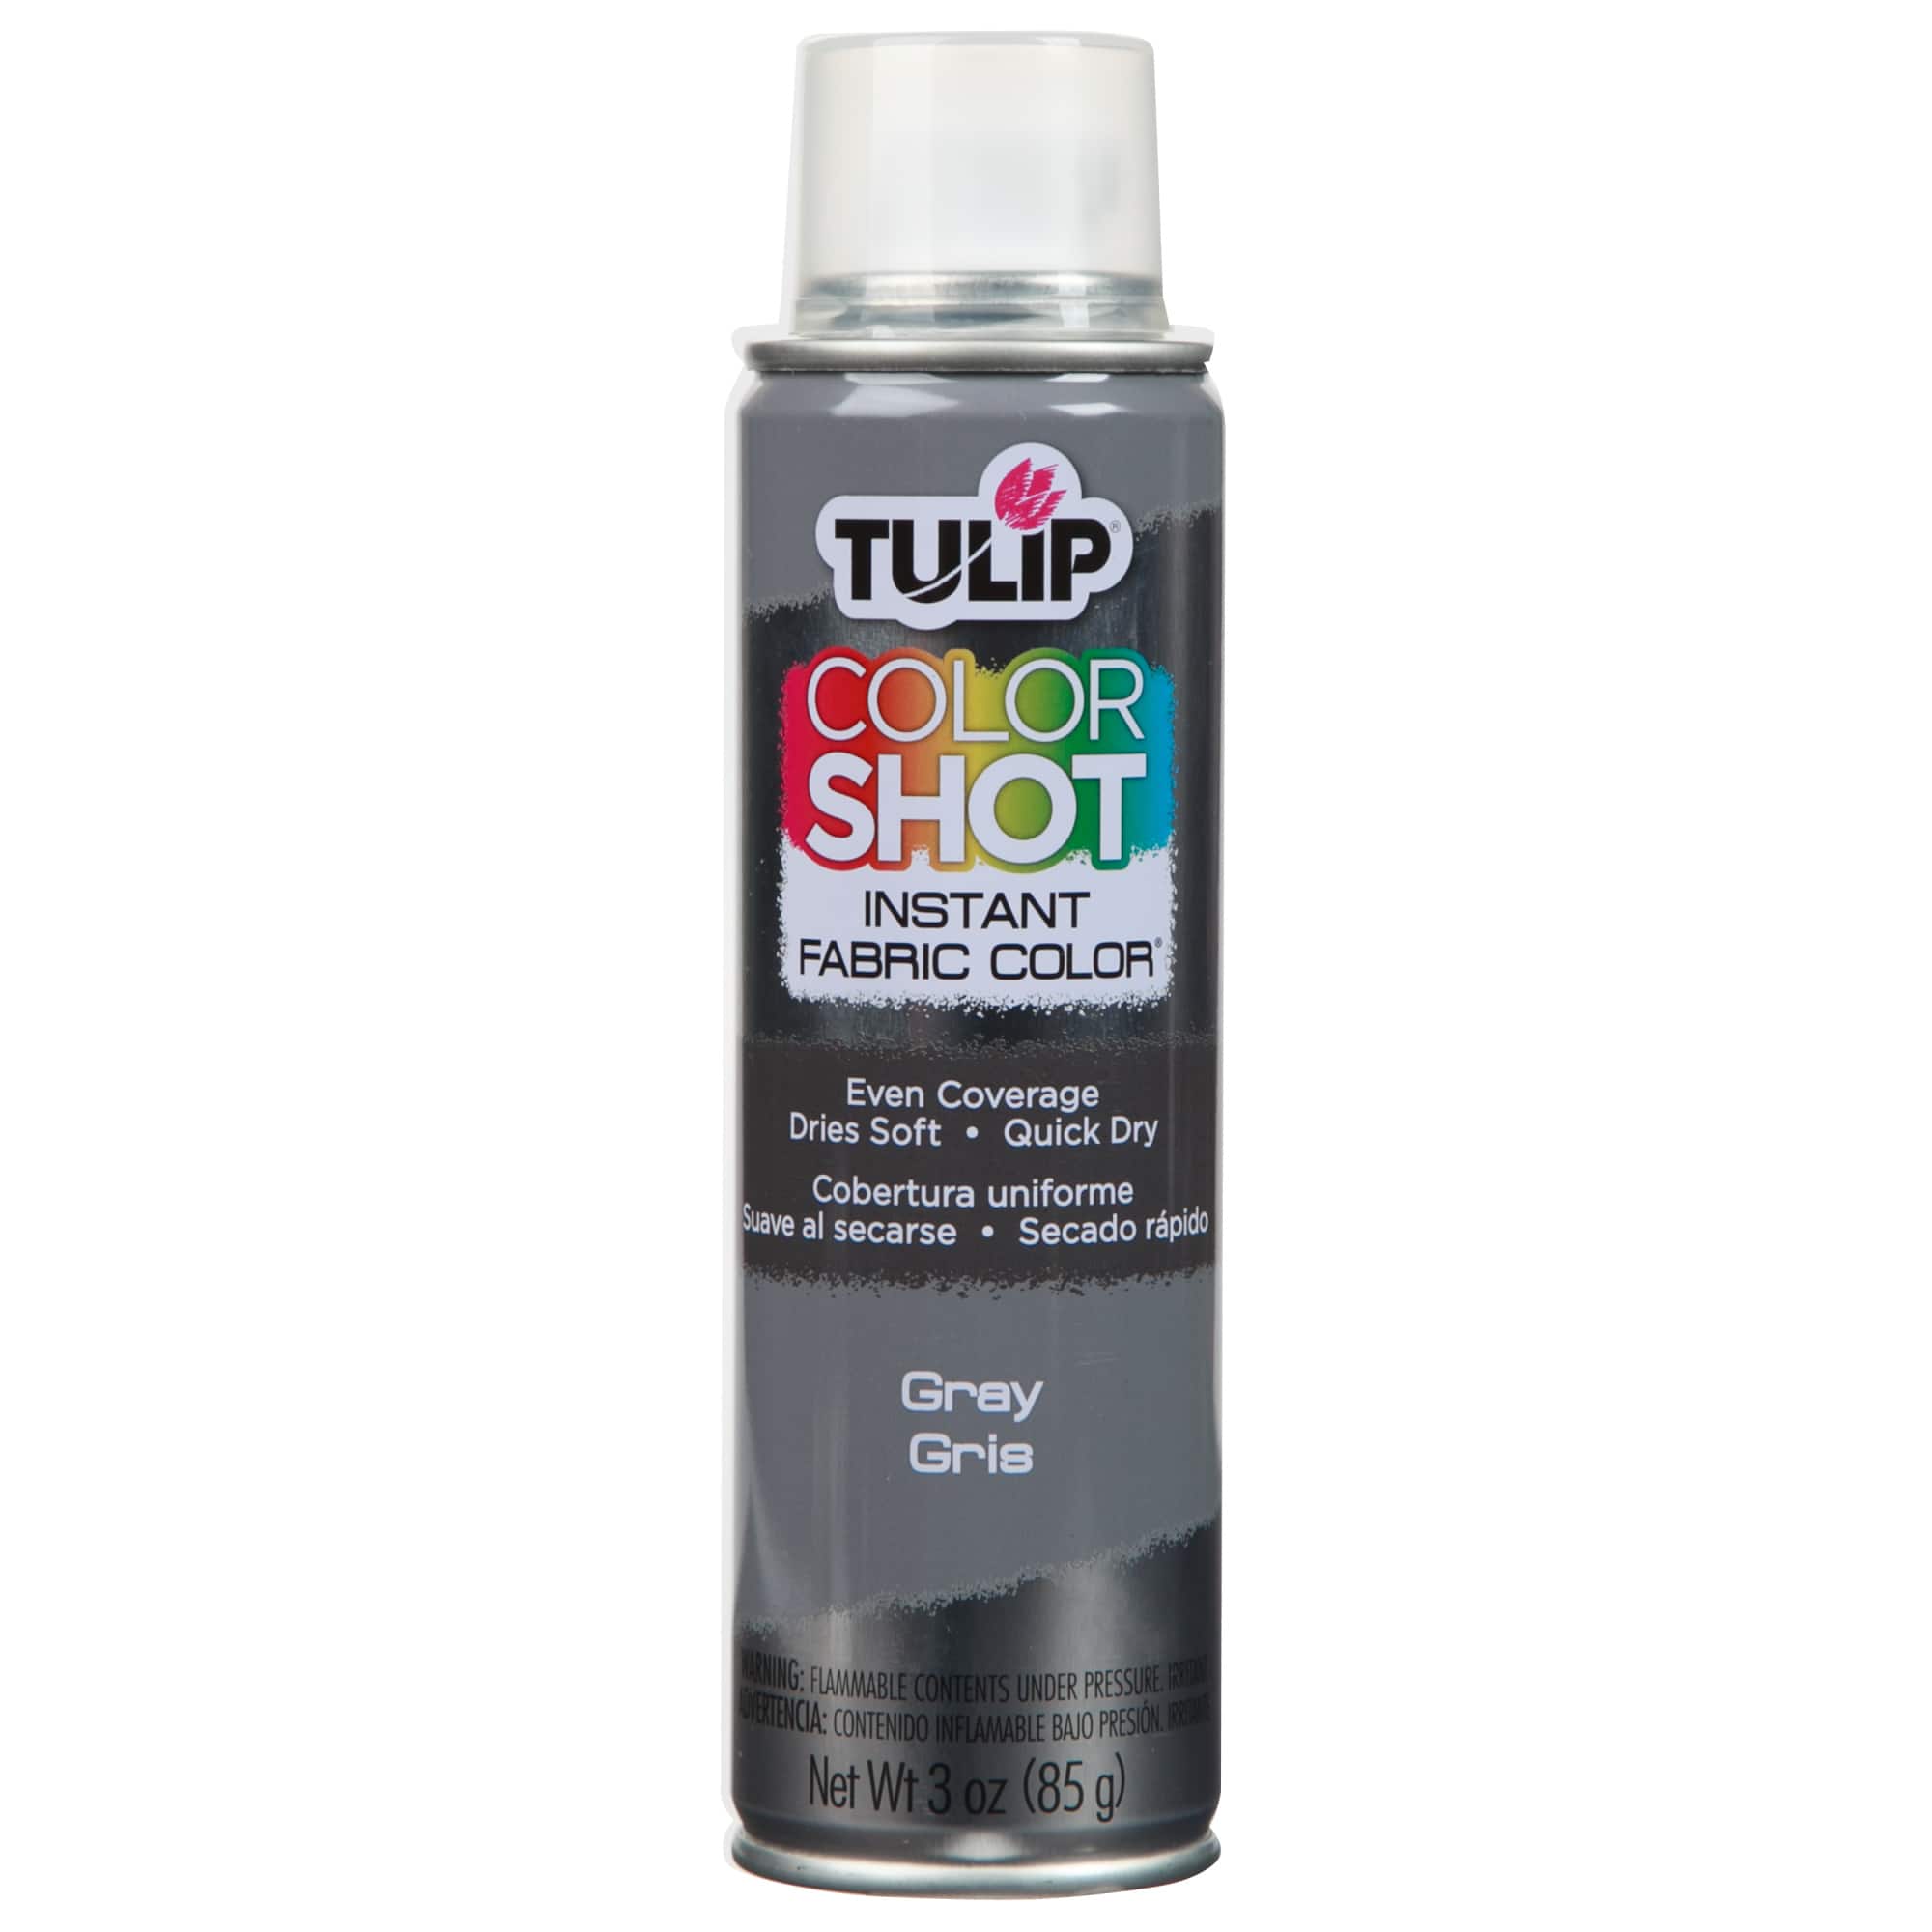 Tulip Colorshot Instant Fabric Color Spray 3oz Neon Orange